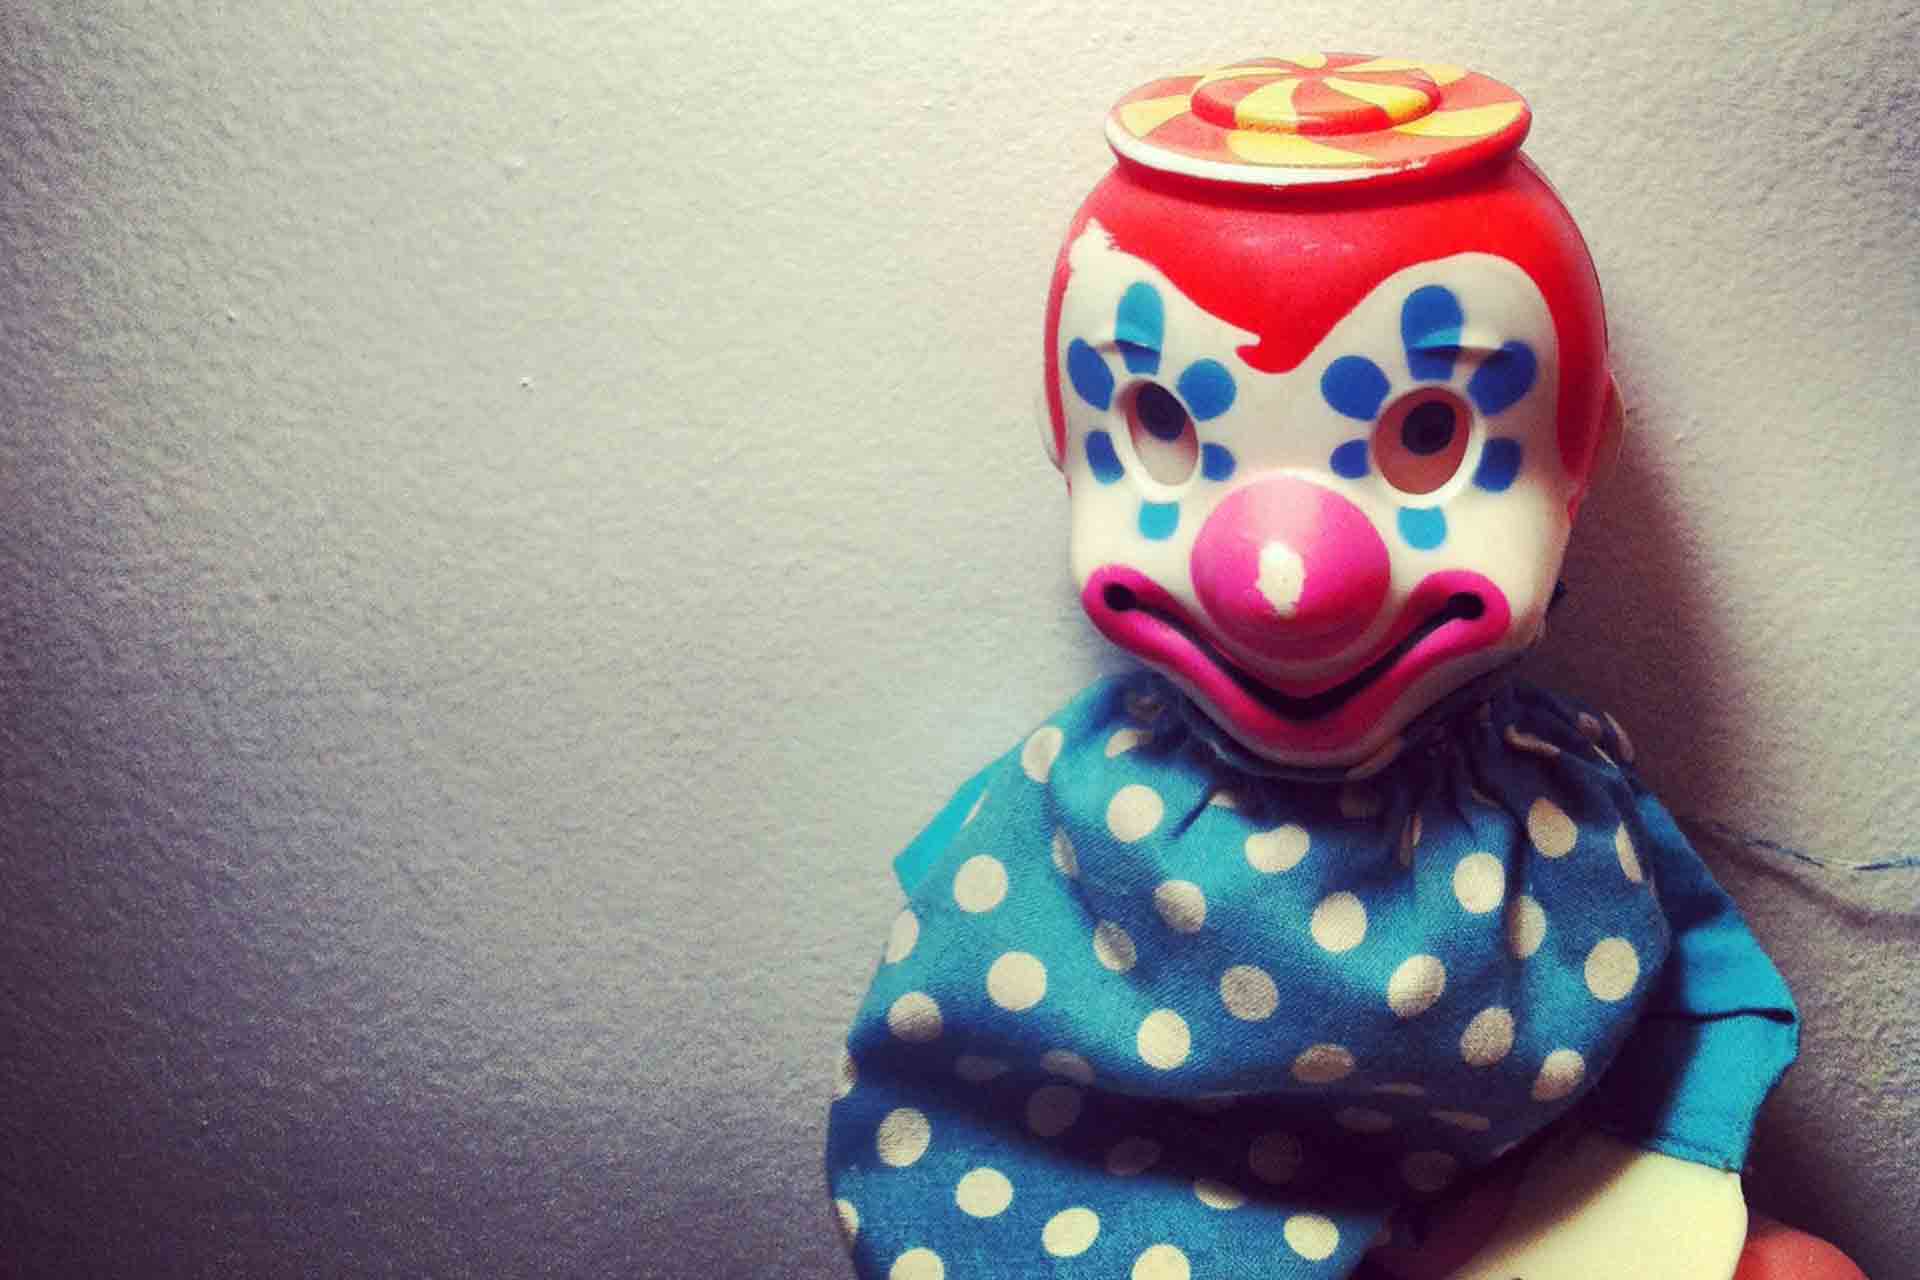 clown-fear-horror-3363